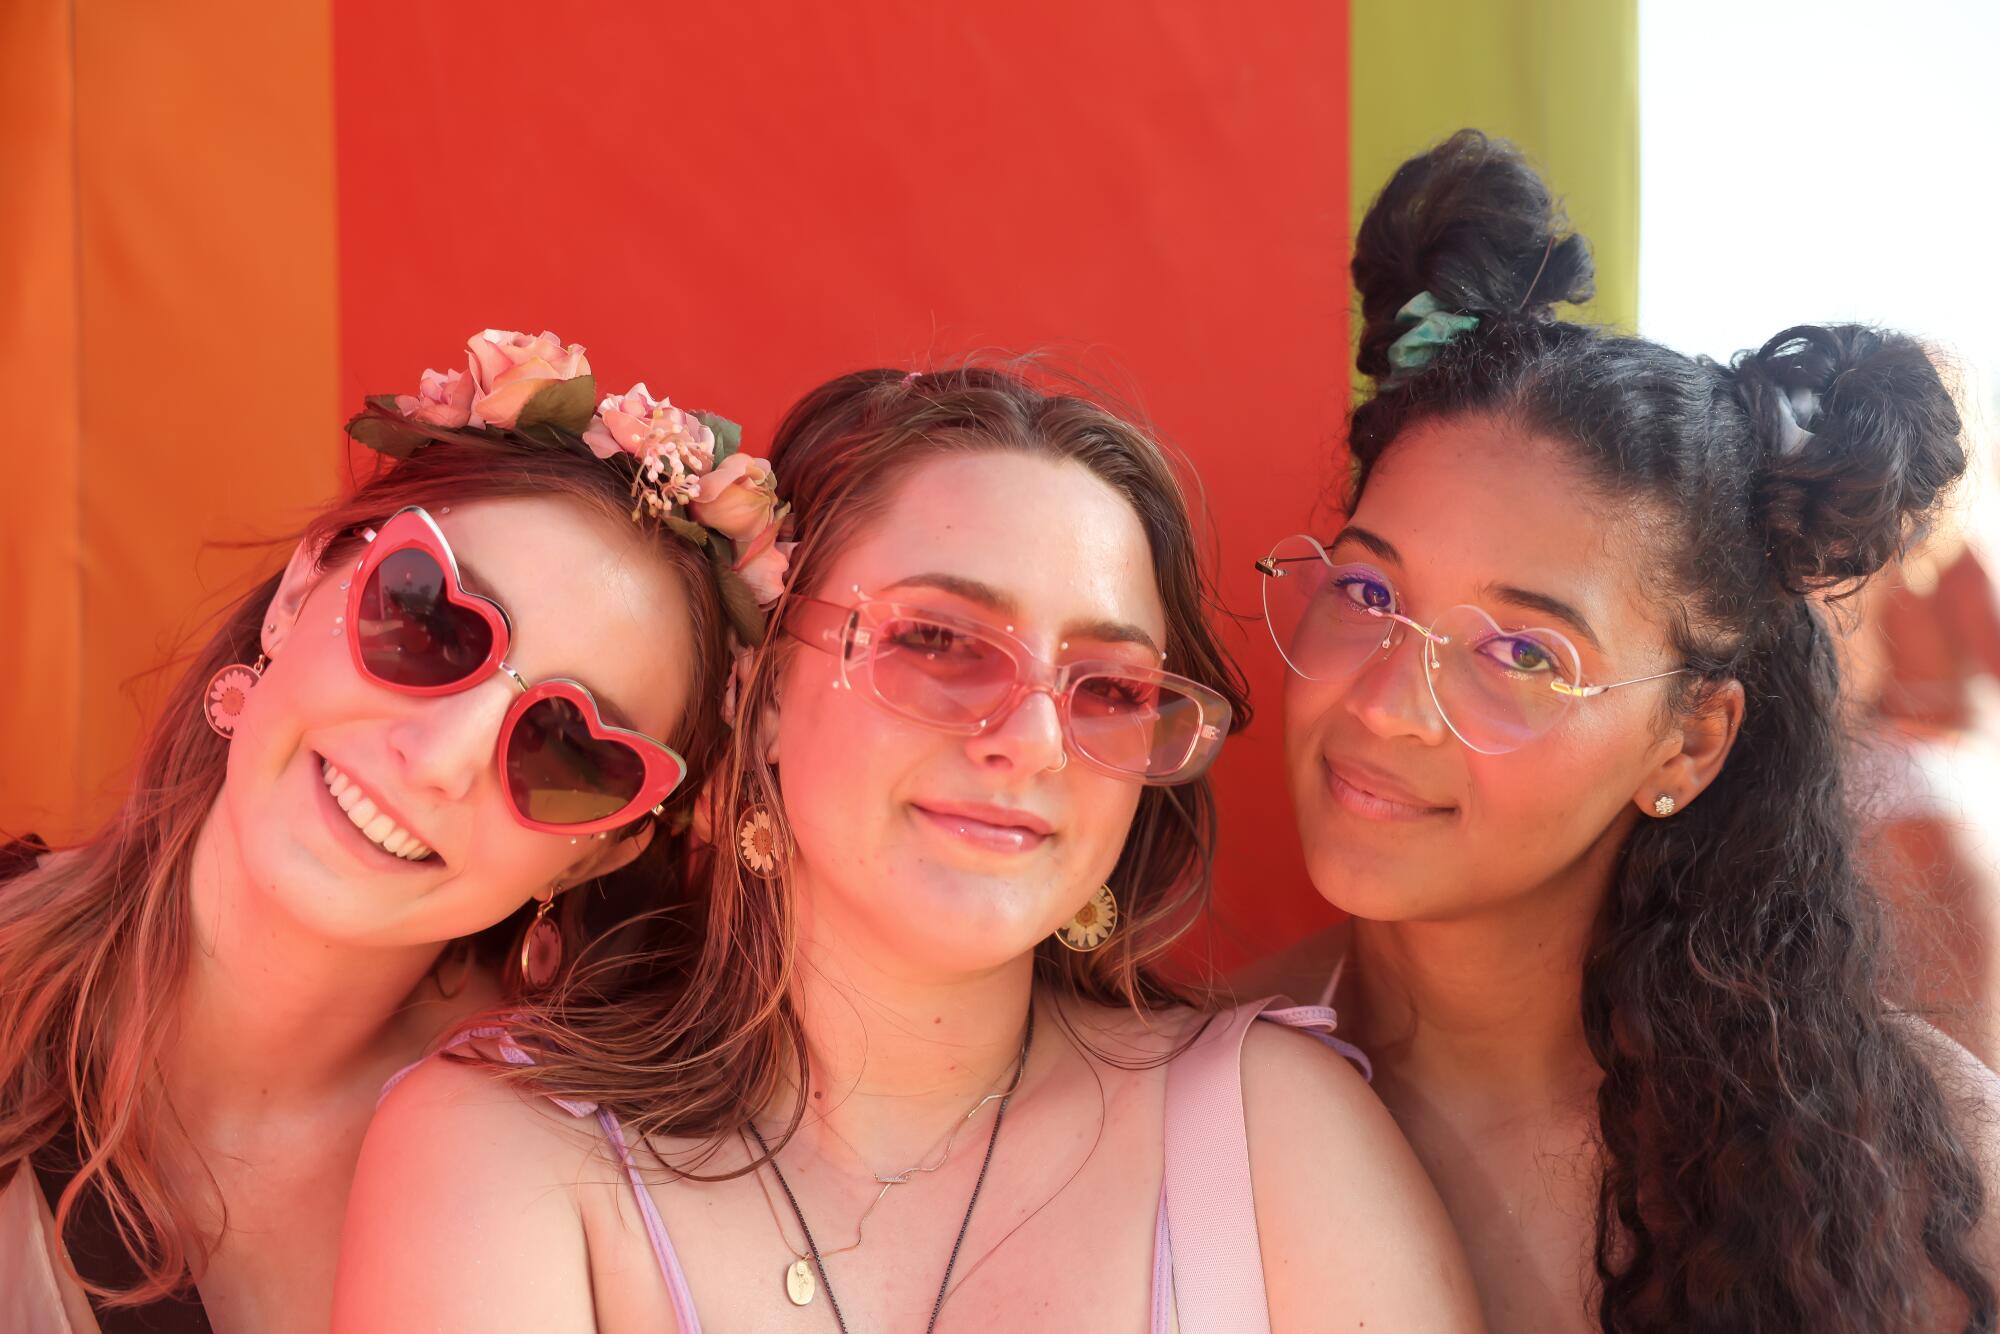     Julia Ednik, Bree Corallo, and Zaina Green of San Diego describe their look as "Basic fairy."